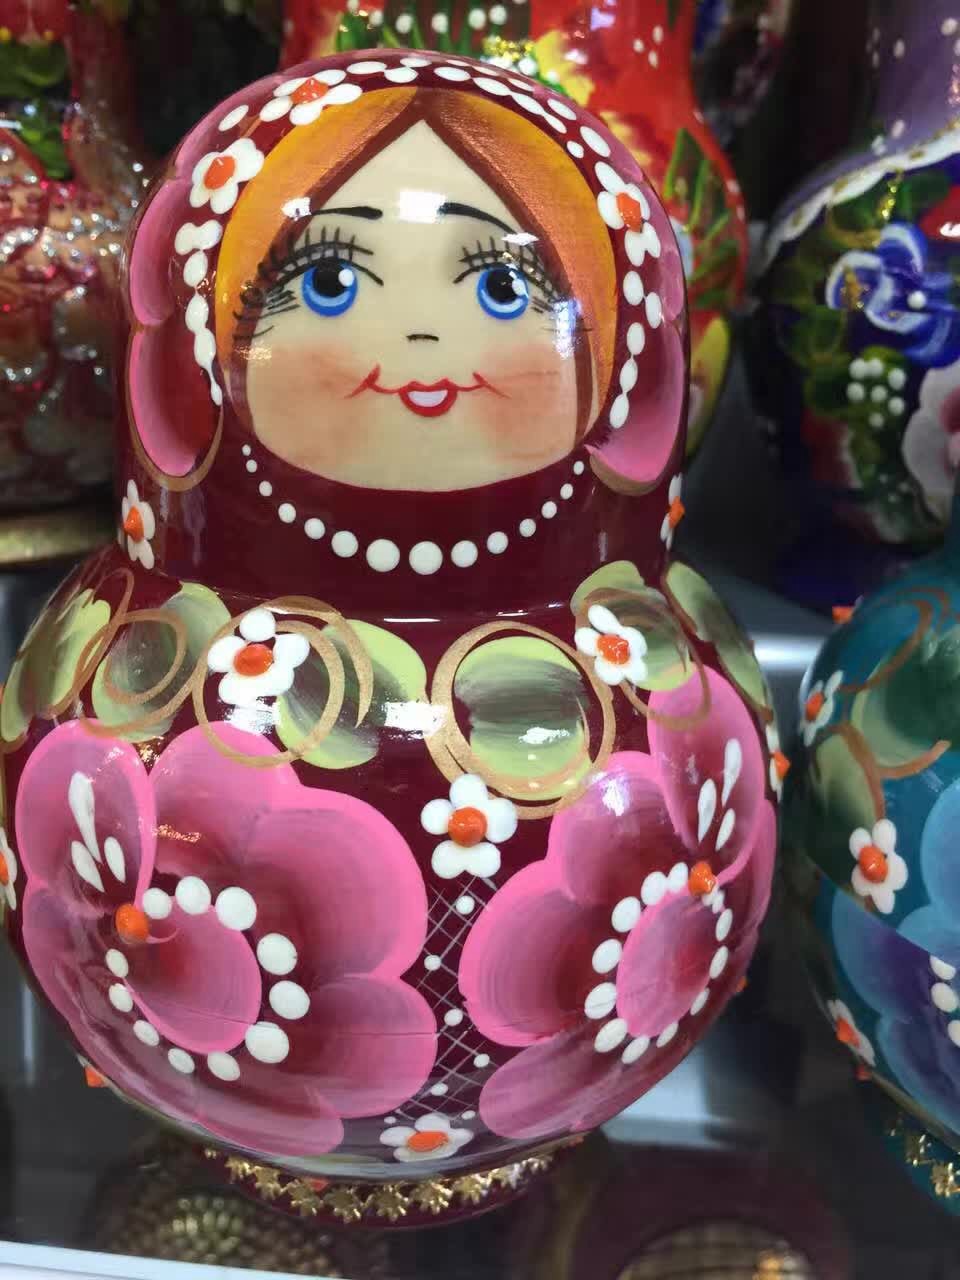 吉林通化专业供应套娃厂家 直销俄罗斯套娃 精美俄罗斯套娃摆件